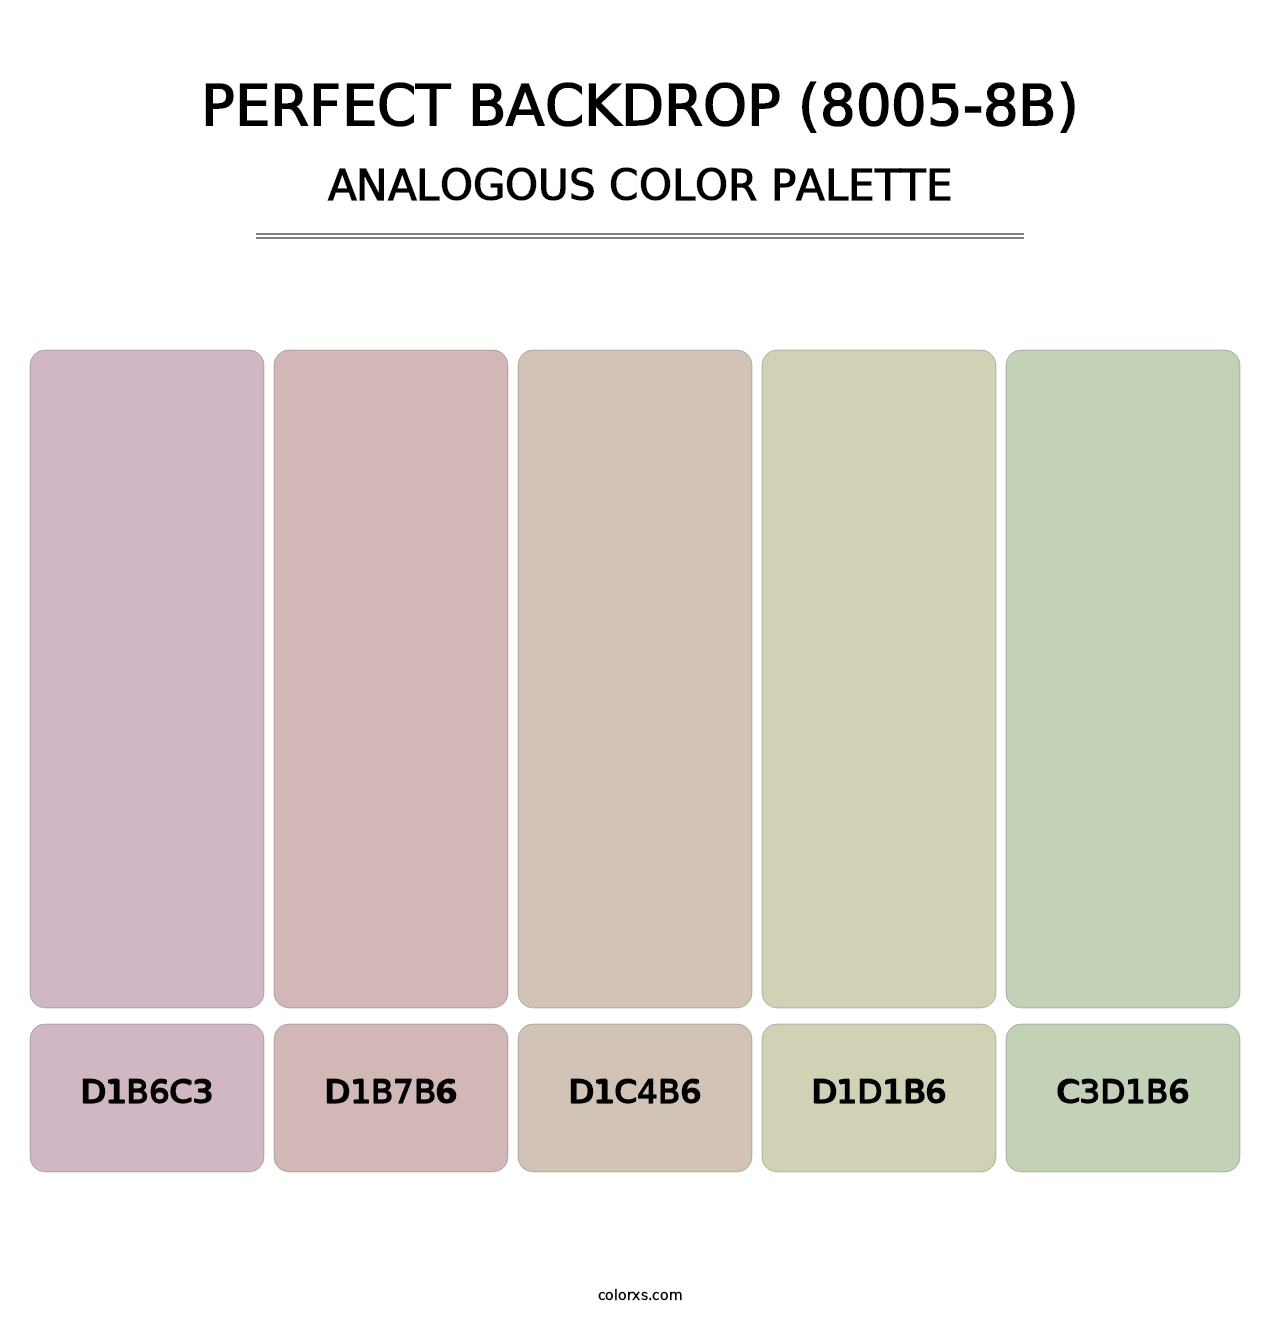 Perfect Backdrop (8005-8B) - Analogous Color Palette